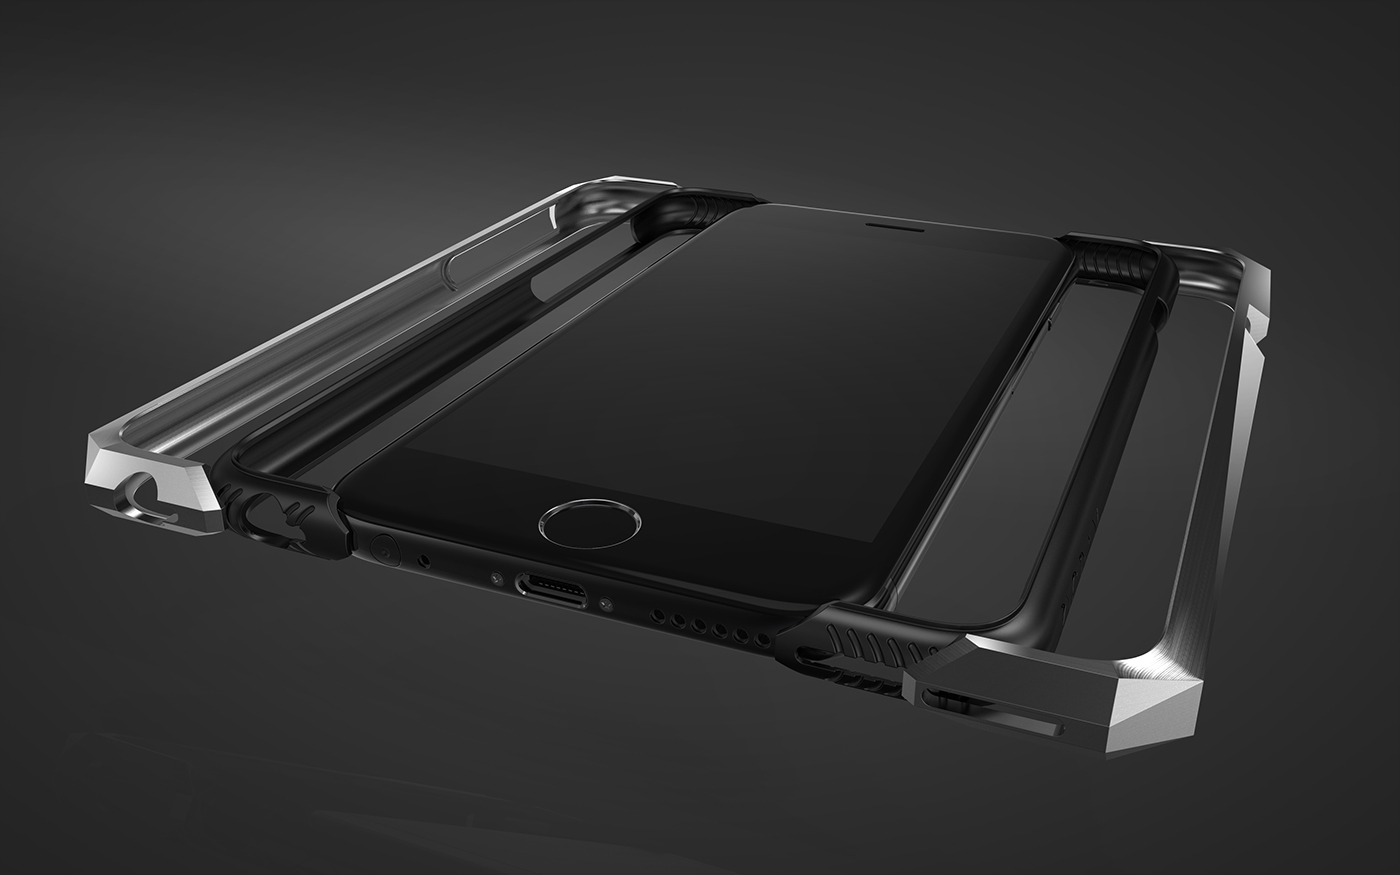 case mobile iphone phone accessories Accessory Titanium stealth aurora facet future avant Advent gray apple